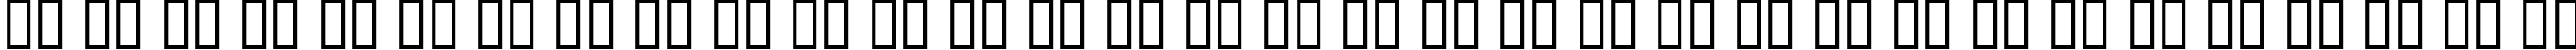 Пример написания русского алфавита шрифтом AvalonQuest